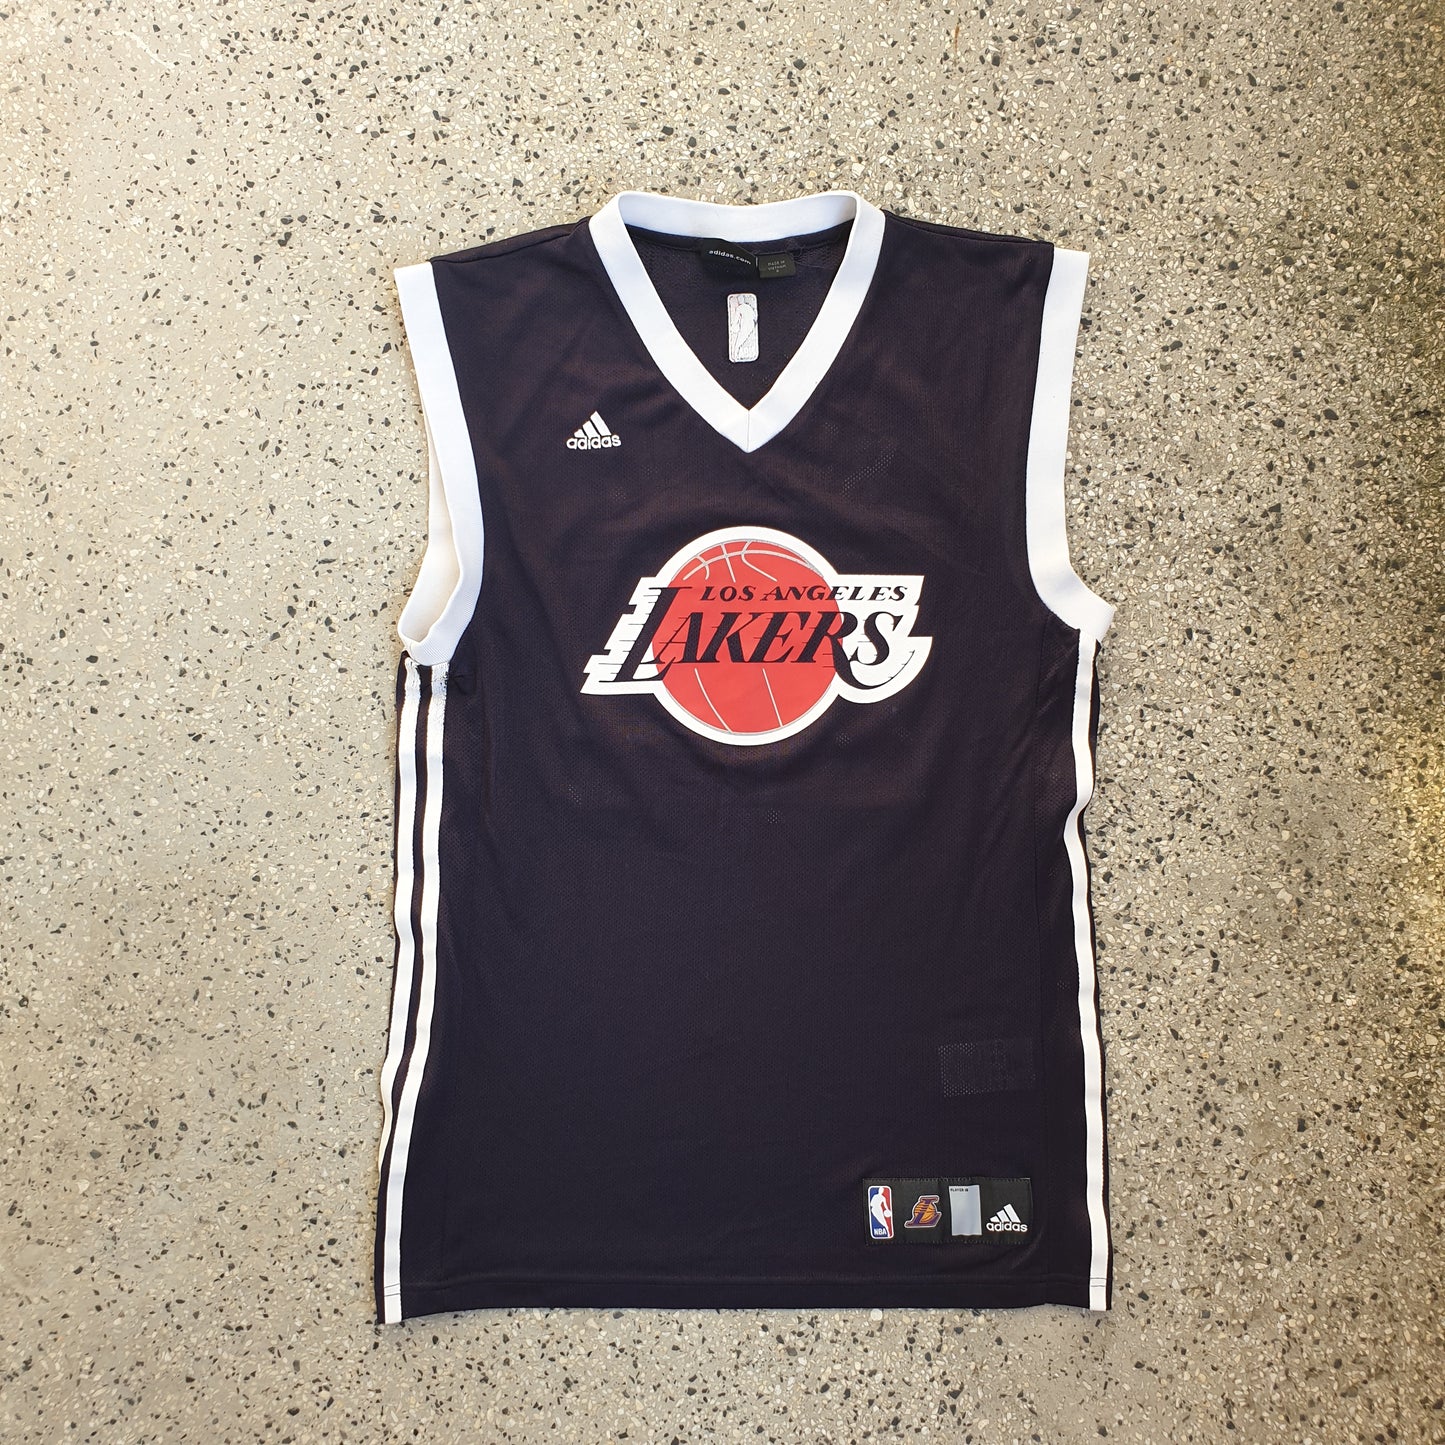 LA Lakers Kobe Bryant Adidas Jersey (S)